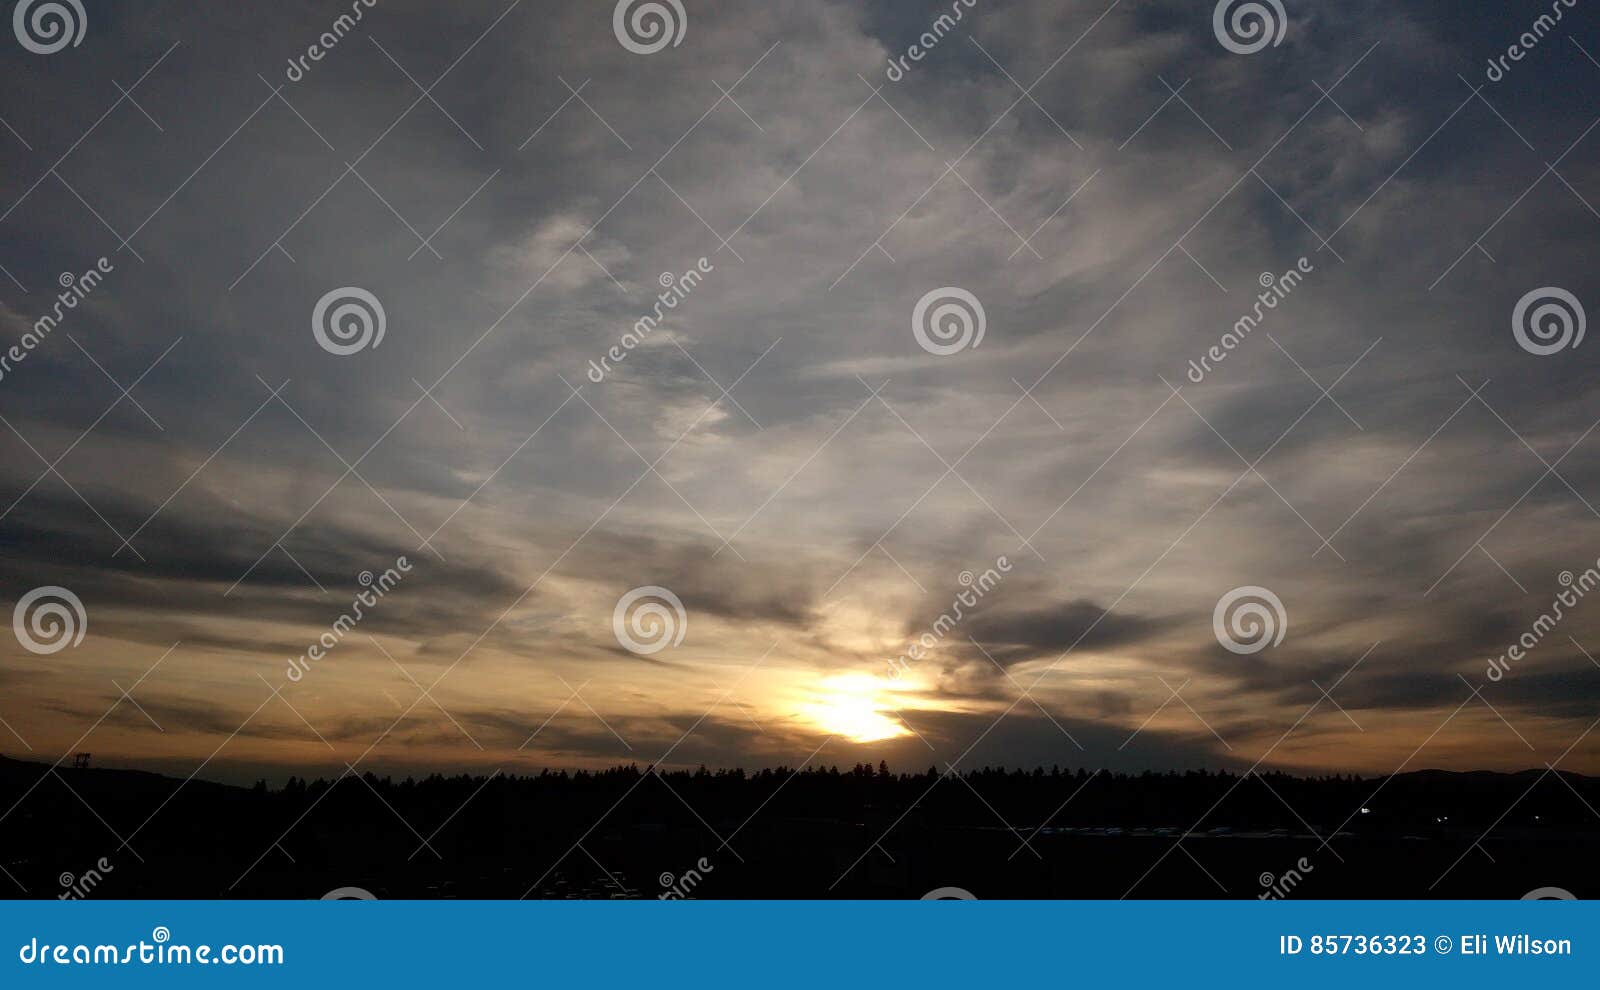 Natur Zitate Sonne Wolken Sonnenuntergang Stockbild Bild Von